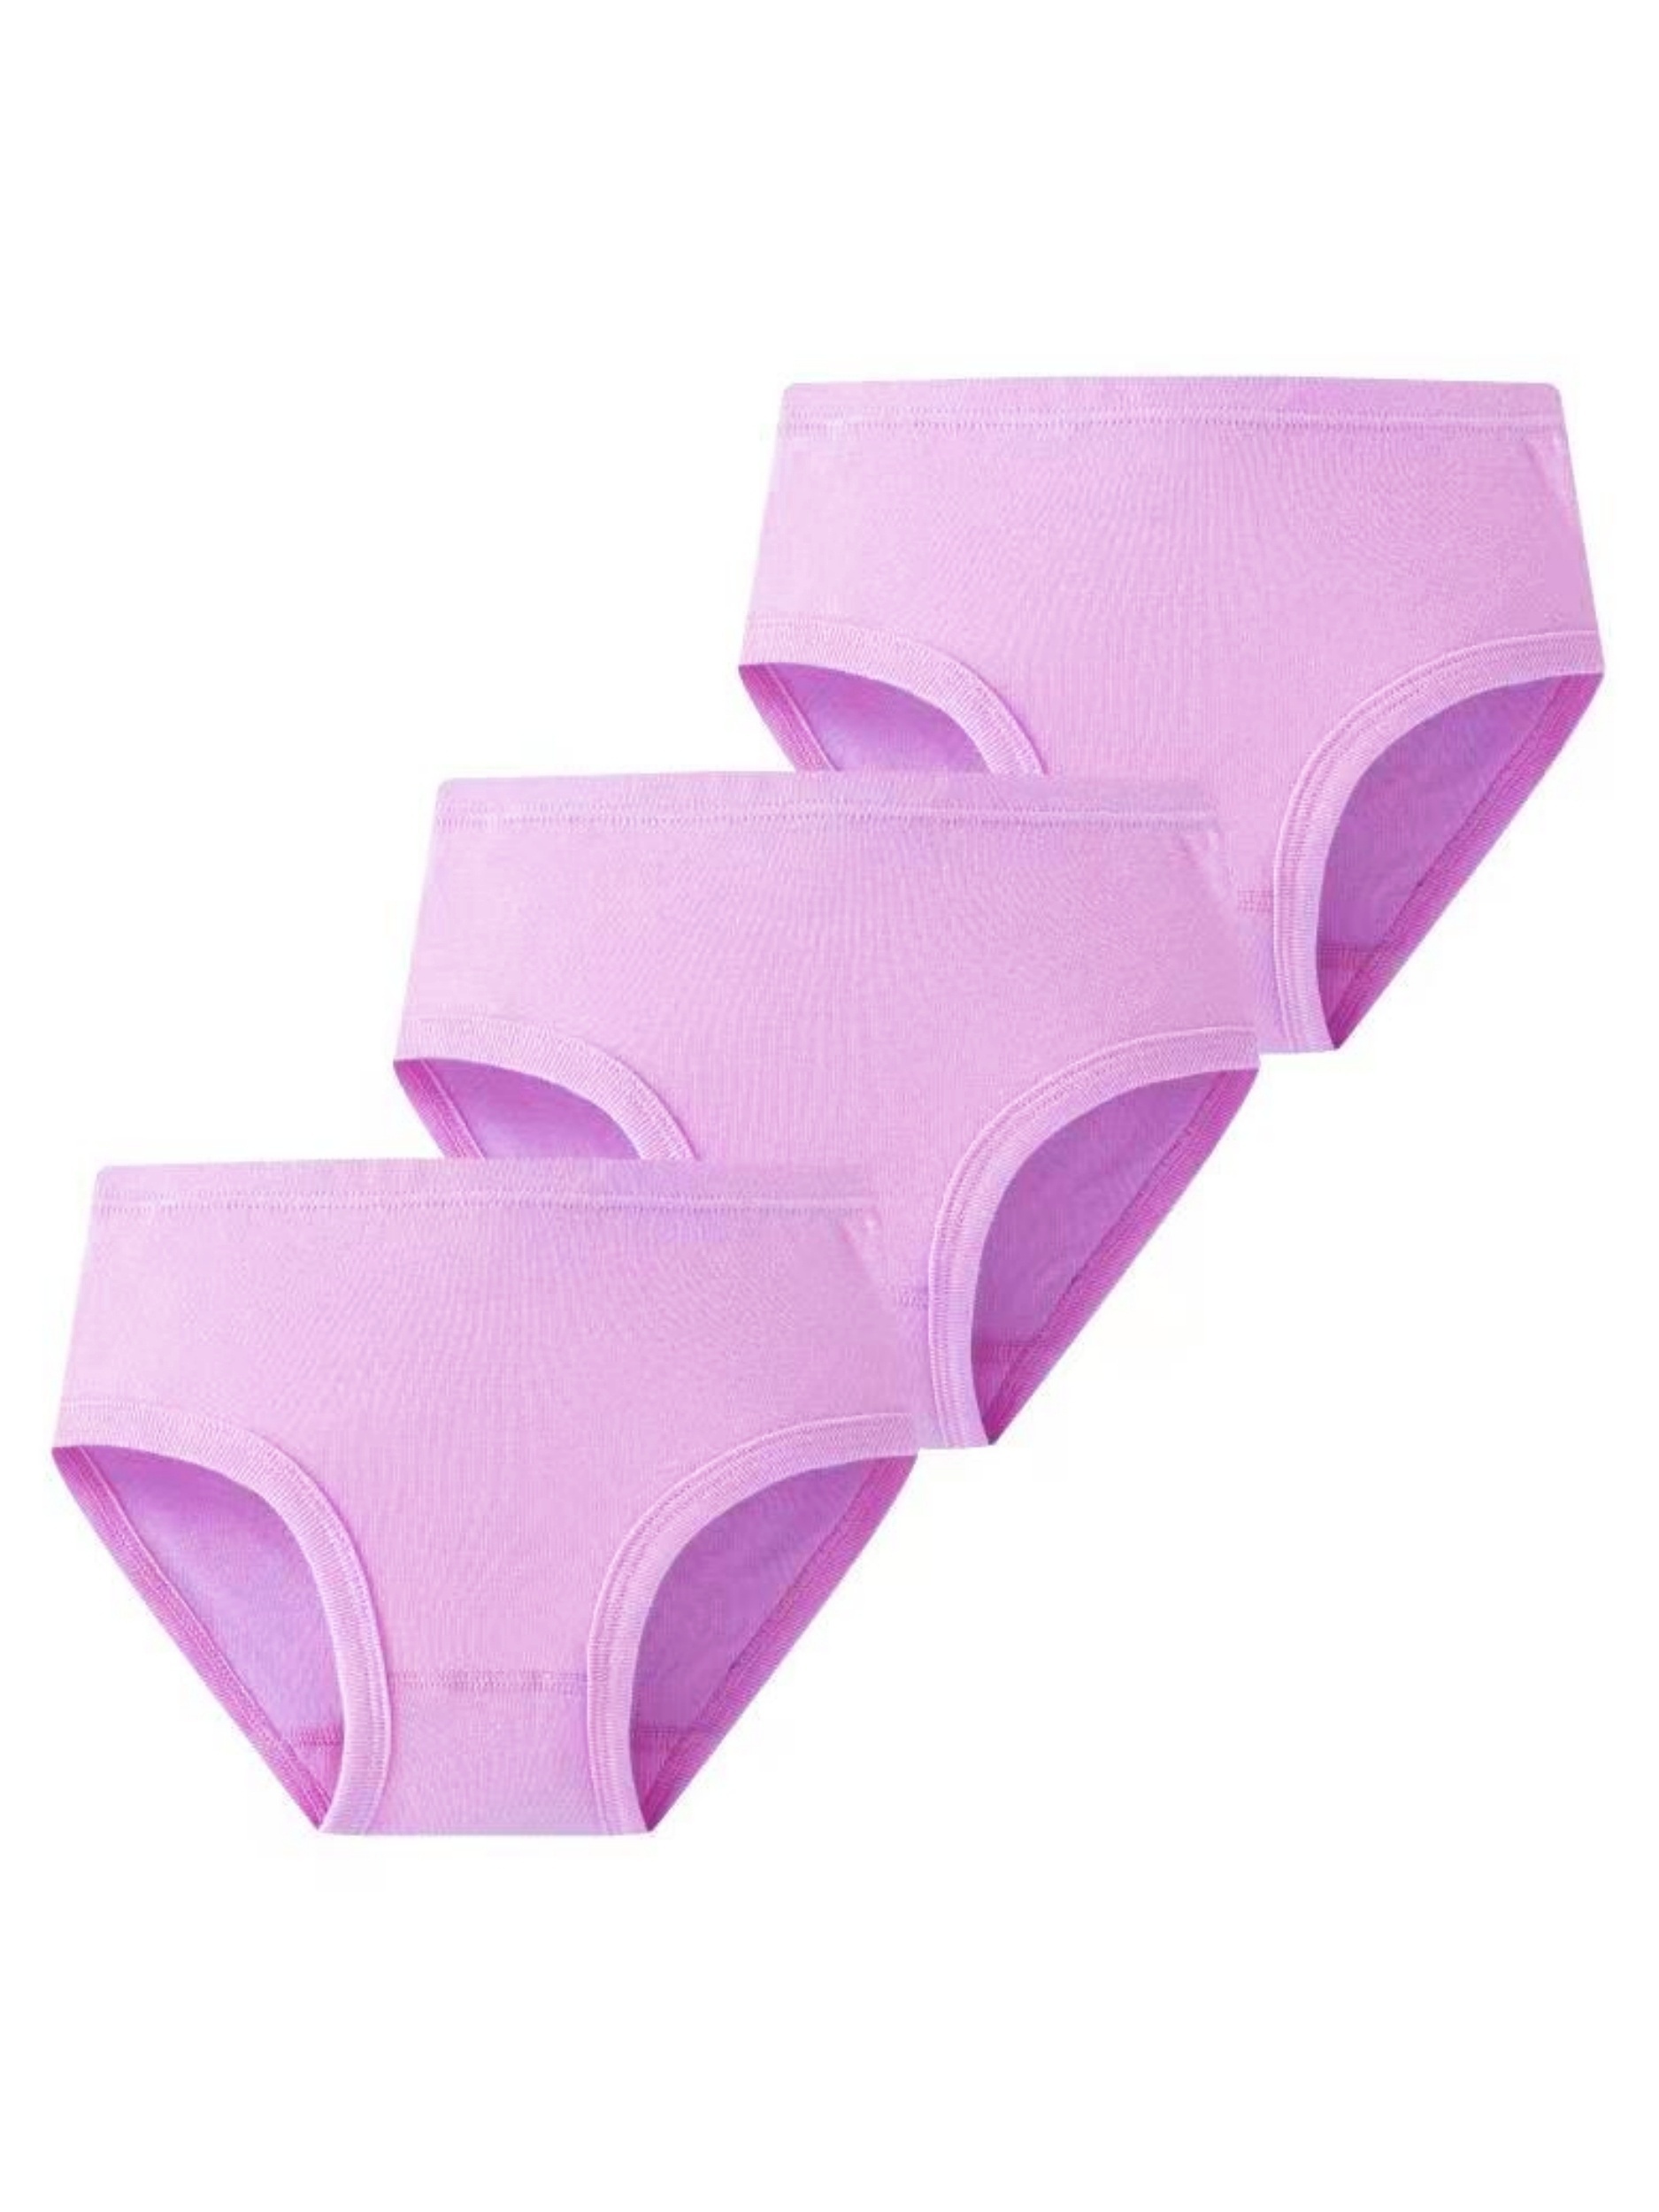 6PCS Girls Cotton Underwear Briefs Kids Breathable Panties 2T 3T 4T 5T 6T  7T Set